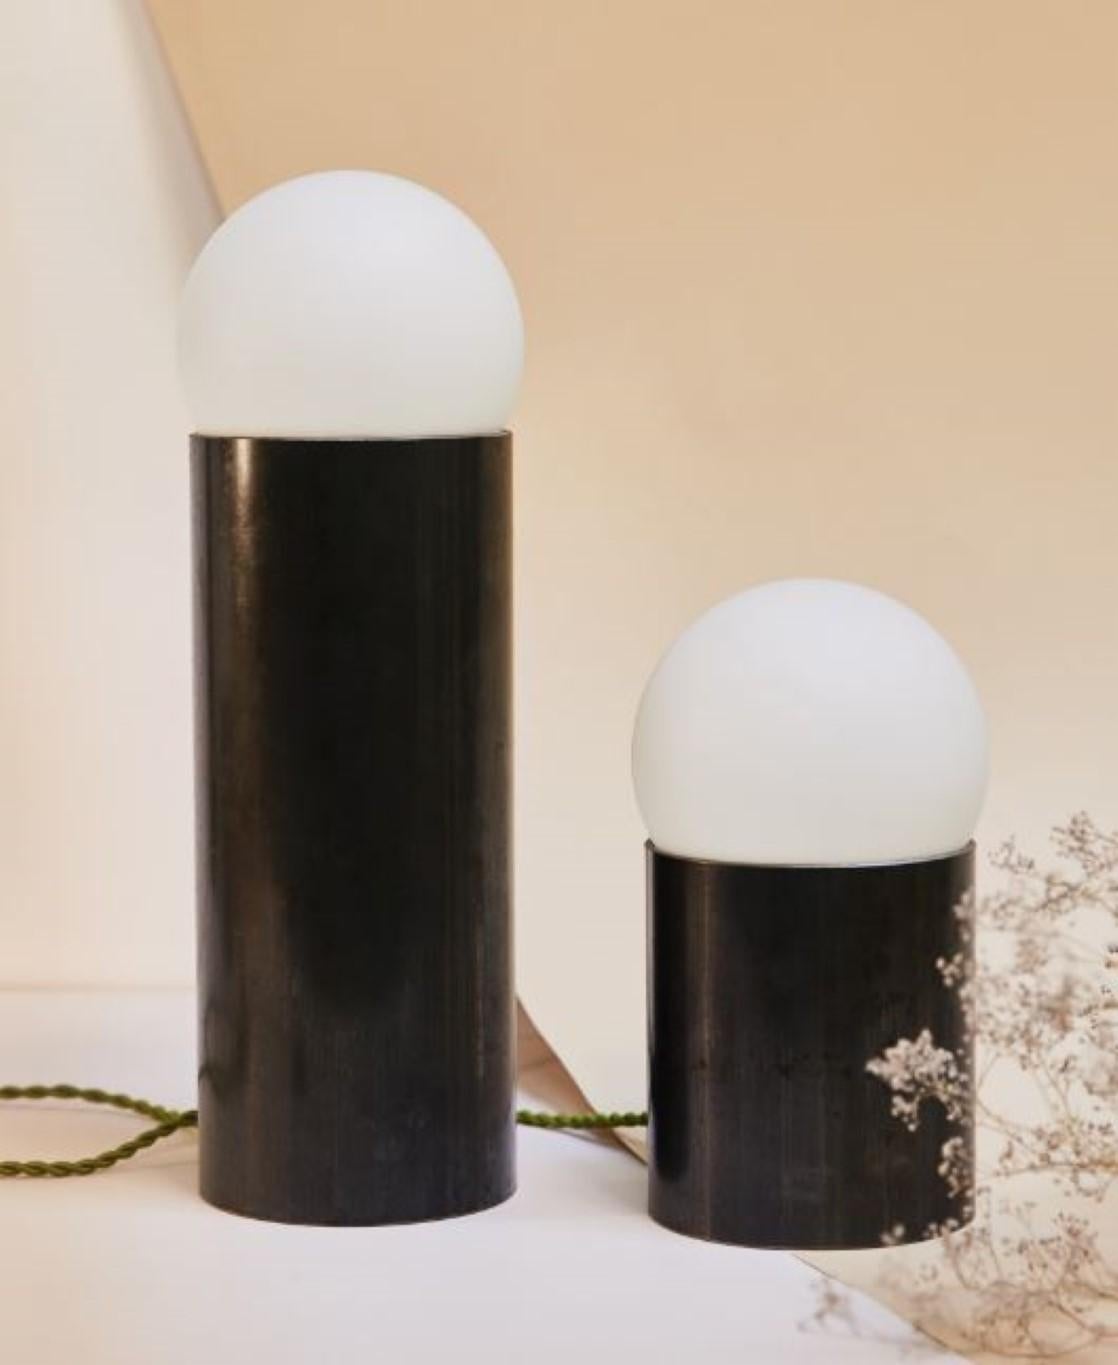 Lampenblumen-Tischlampe von Pia Chevalier
Jede einzelne ist einzigartig.
MATERIALIEN: Gewalzter und polierter Stahl. 
Abmessungen: Ø 11 x H 13 cm. 

Glasglobus: Durchmesser 13 cm.
Kabellänge: 150 cm.

Pia Chevalier ist eine französische